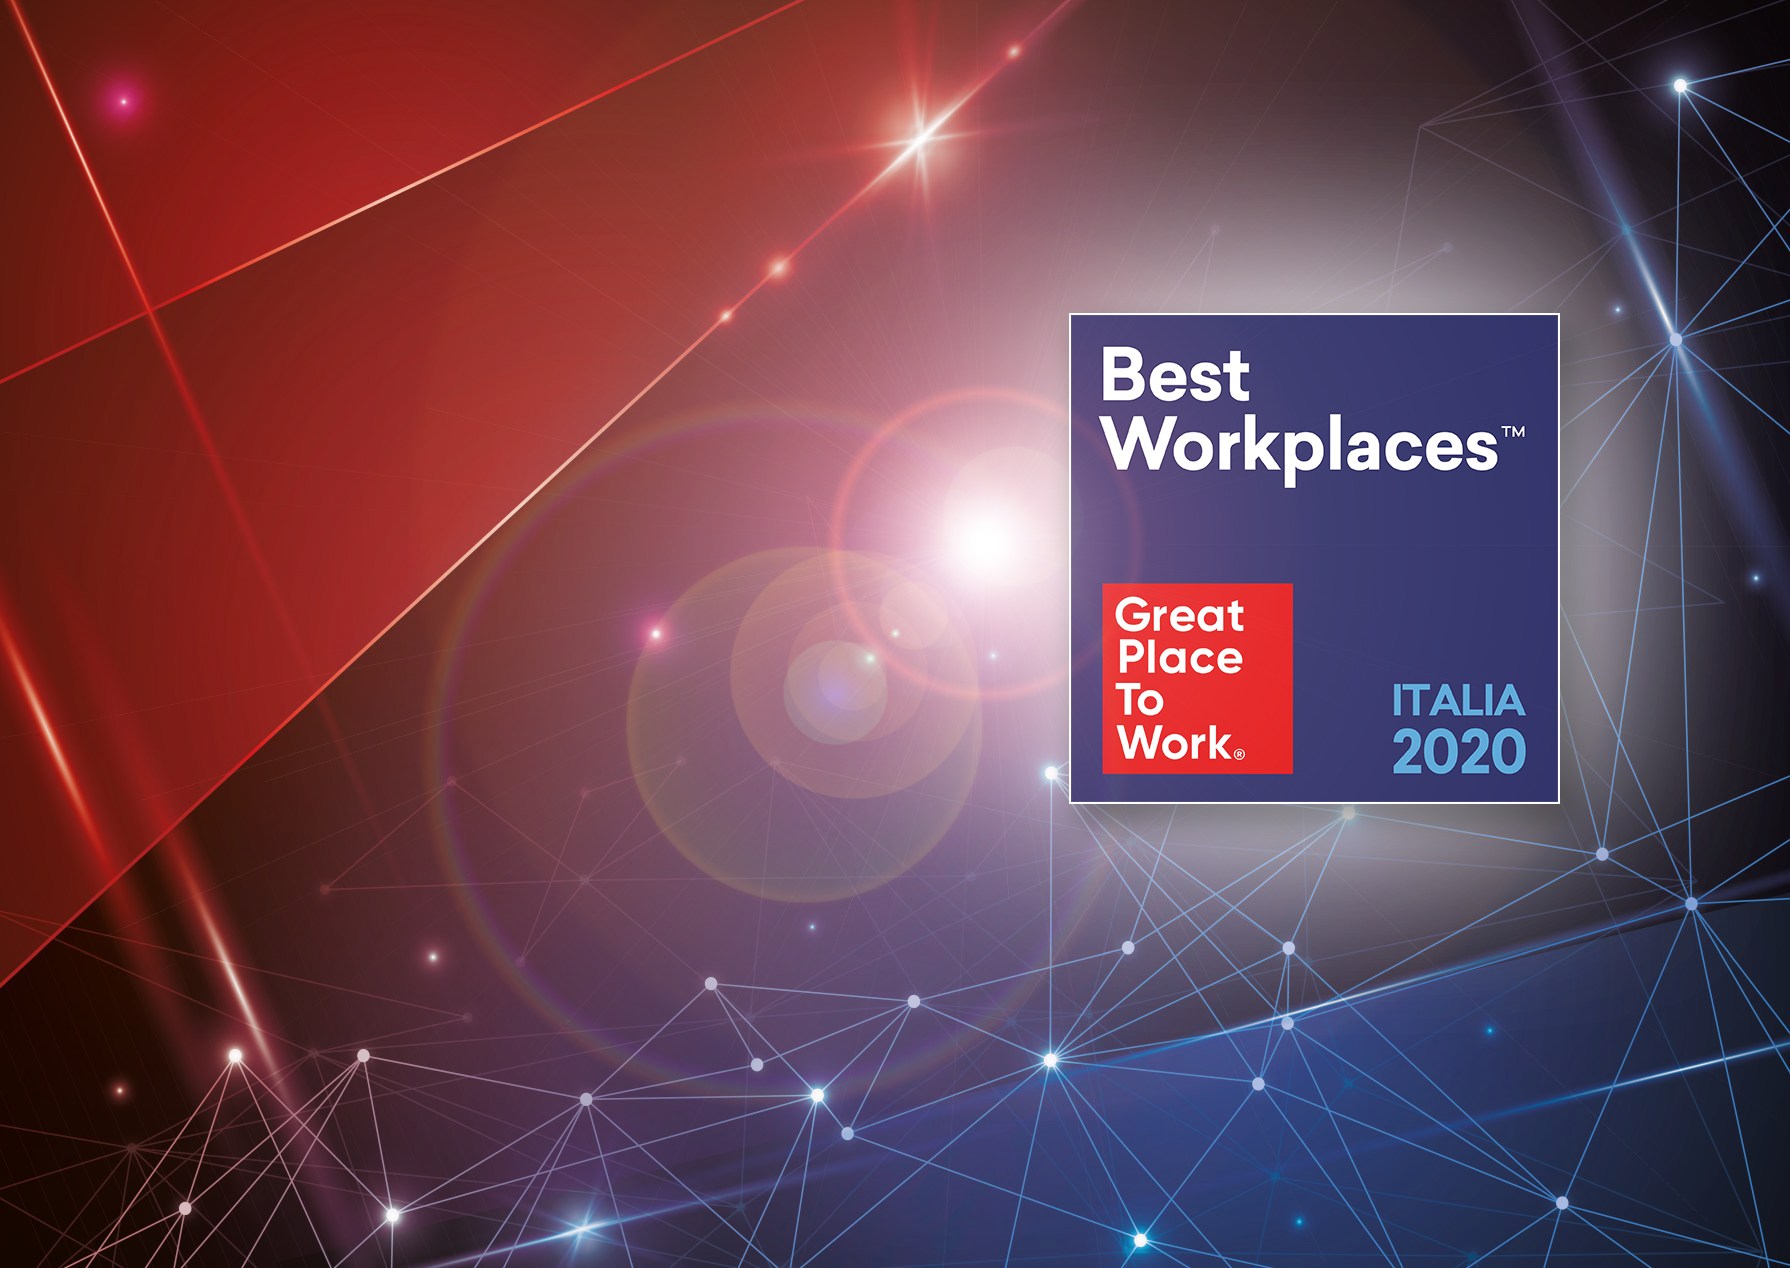 Ecco la Classifica Best Workplaces Italia 2020 delle migliori aziende per cui lavorare